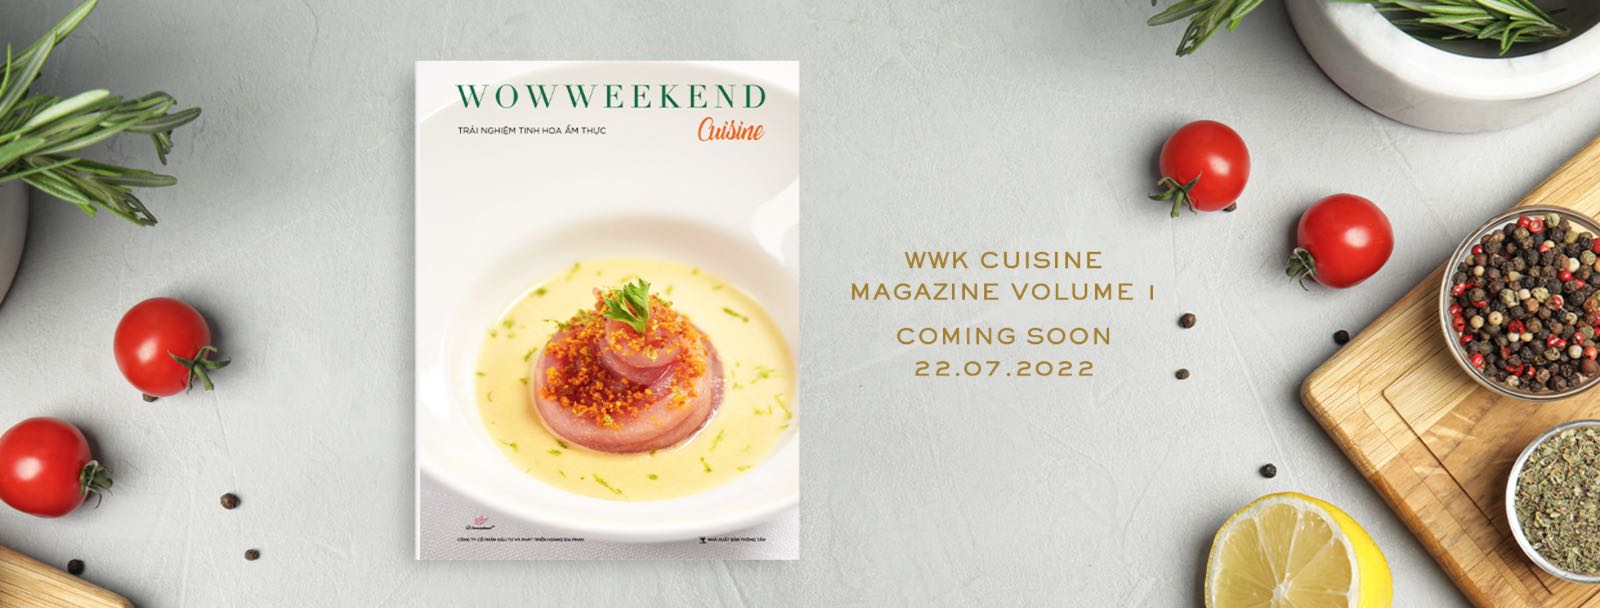 WOWWEEKEND, WWK Cuisine, WWK Cuisine Vol.1, ra mắt ấn phẩm WWK Cuisine